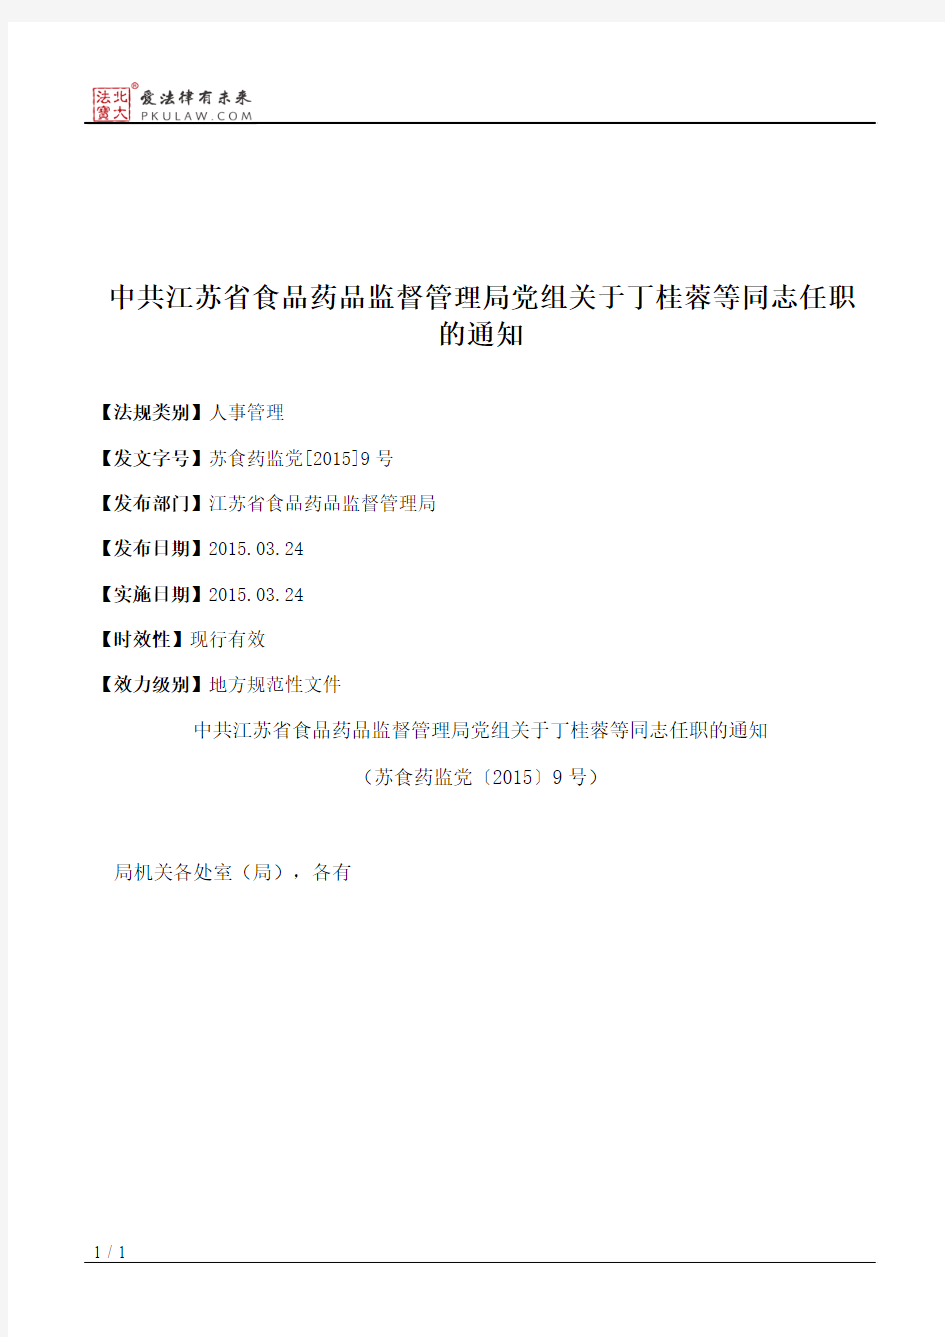 中共江苏省食品药品监督管理局党组关于丁桂蓉等同志任职的通知